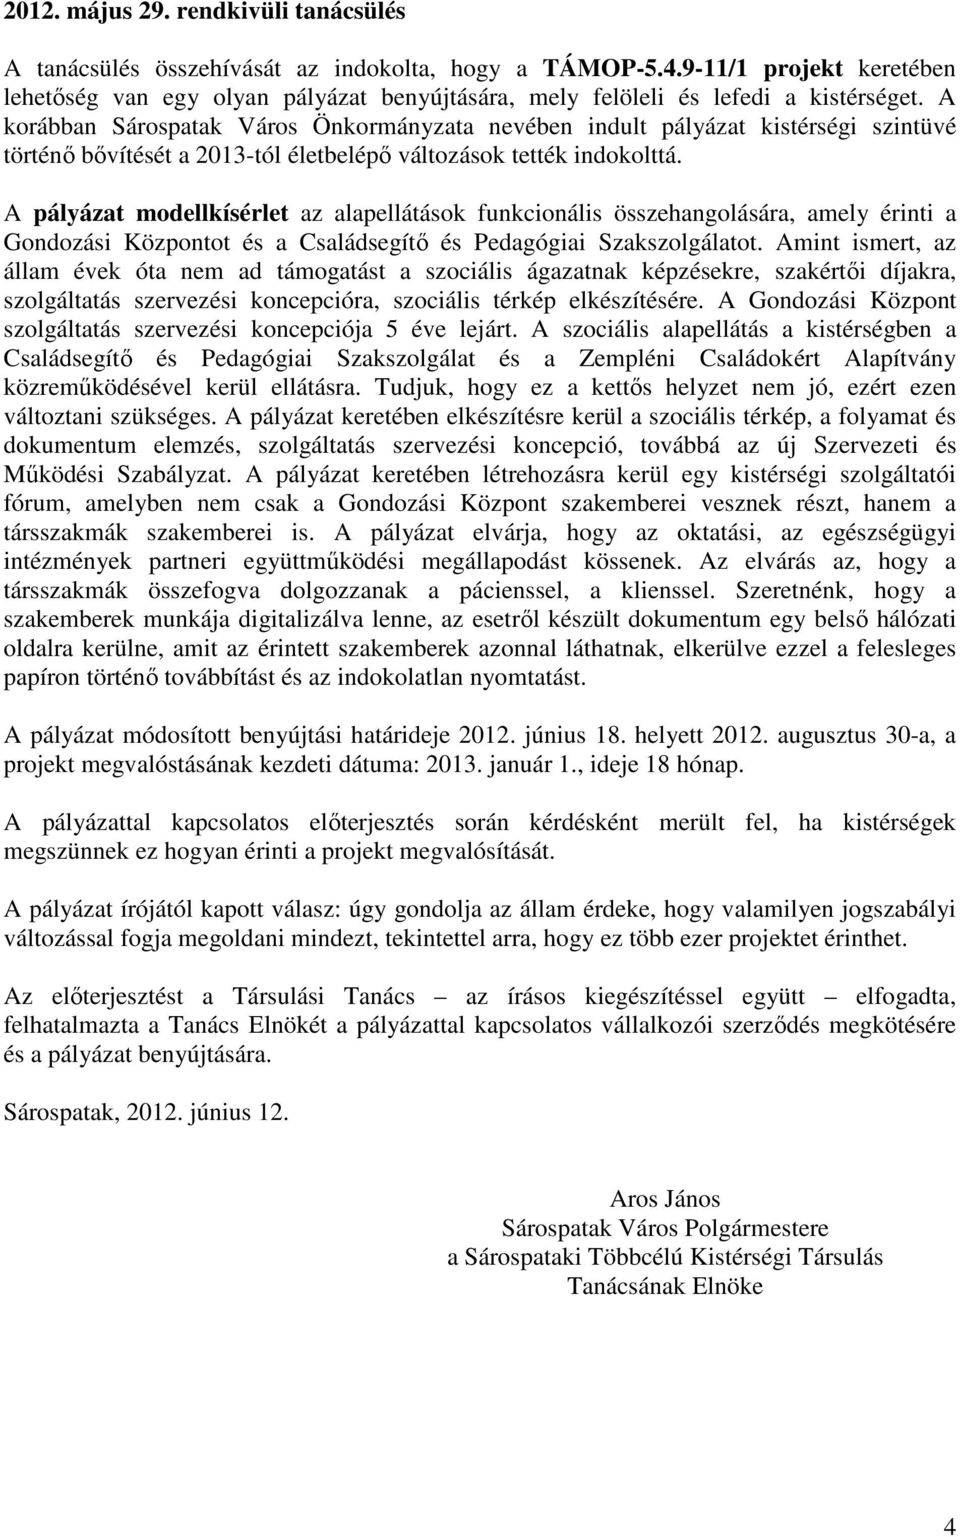 A korábban Sárospatak Város Önkormányzata nevében indult pályázat kistérségi szintüvé történı bıvítését a 2013-tól életbelépı változások tették indokolttá.